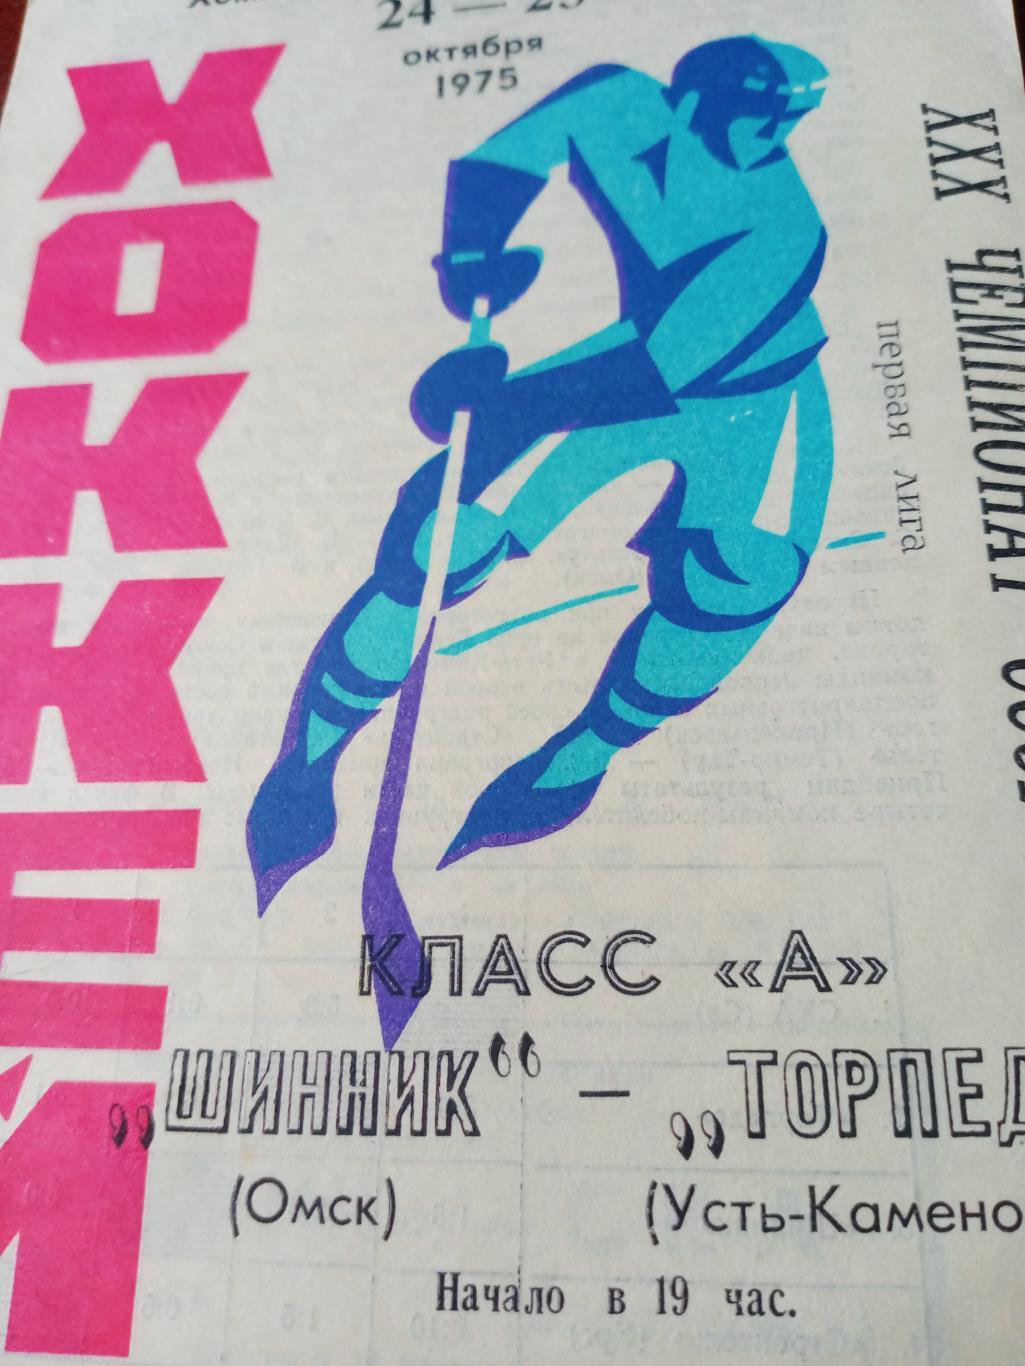 Шинник Омск - Торпедо Усть-Каменогорск. 24 и 25 октября 1975 год